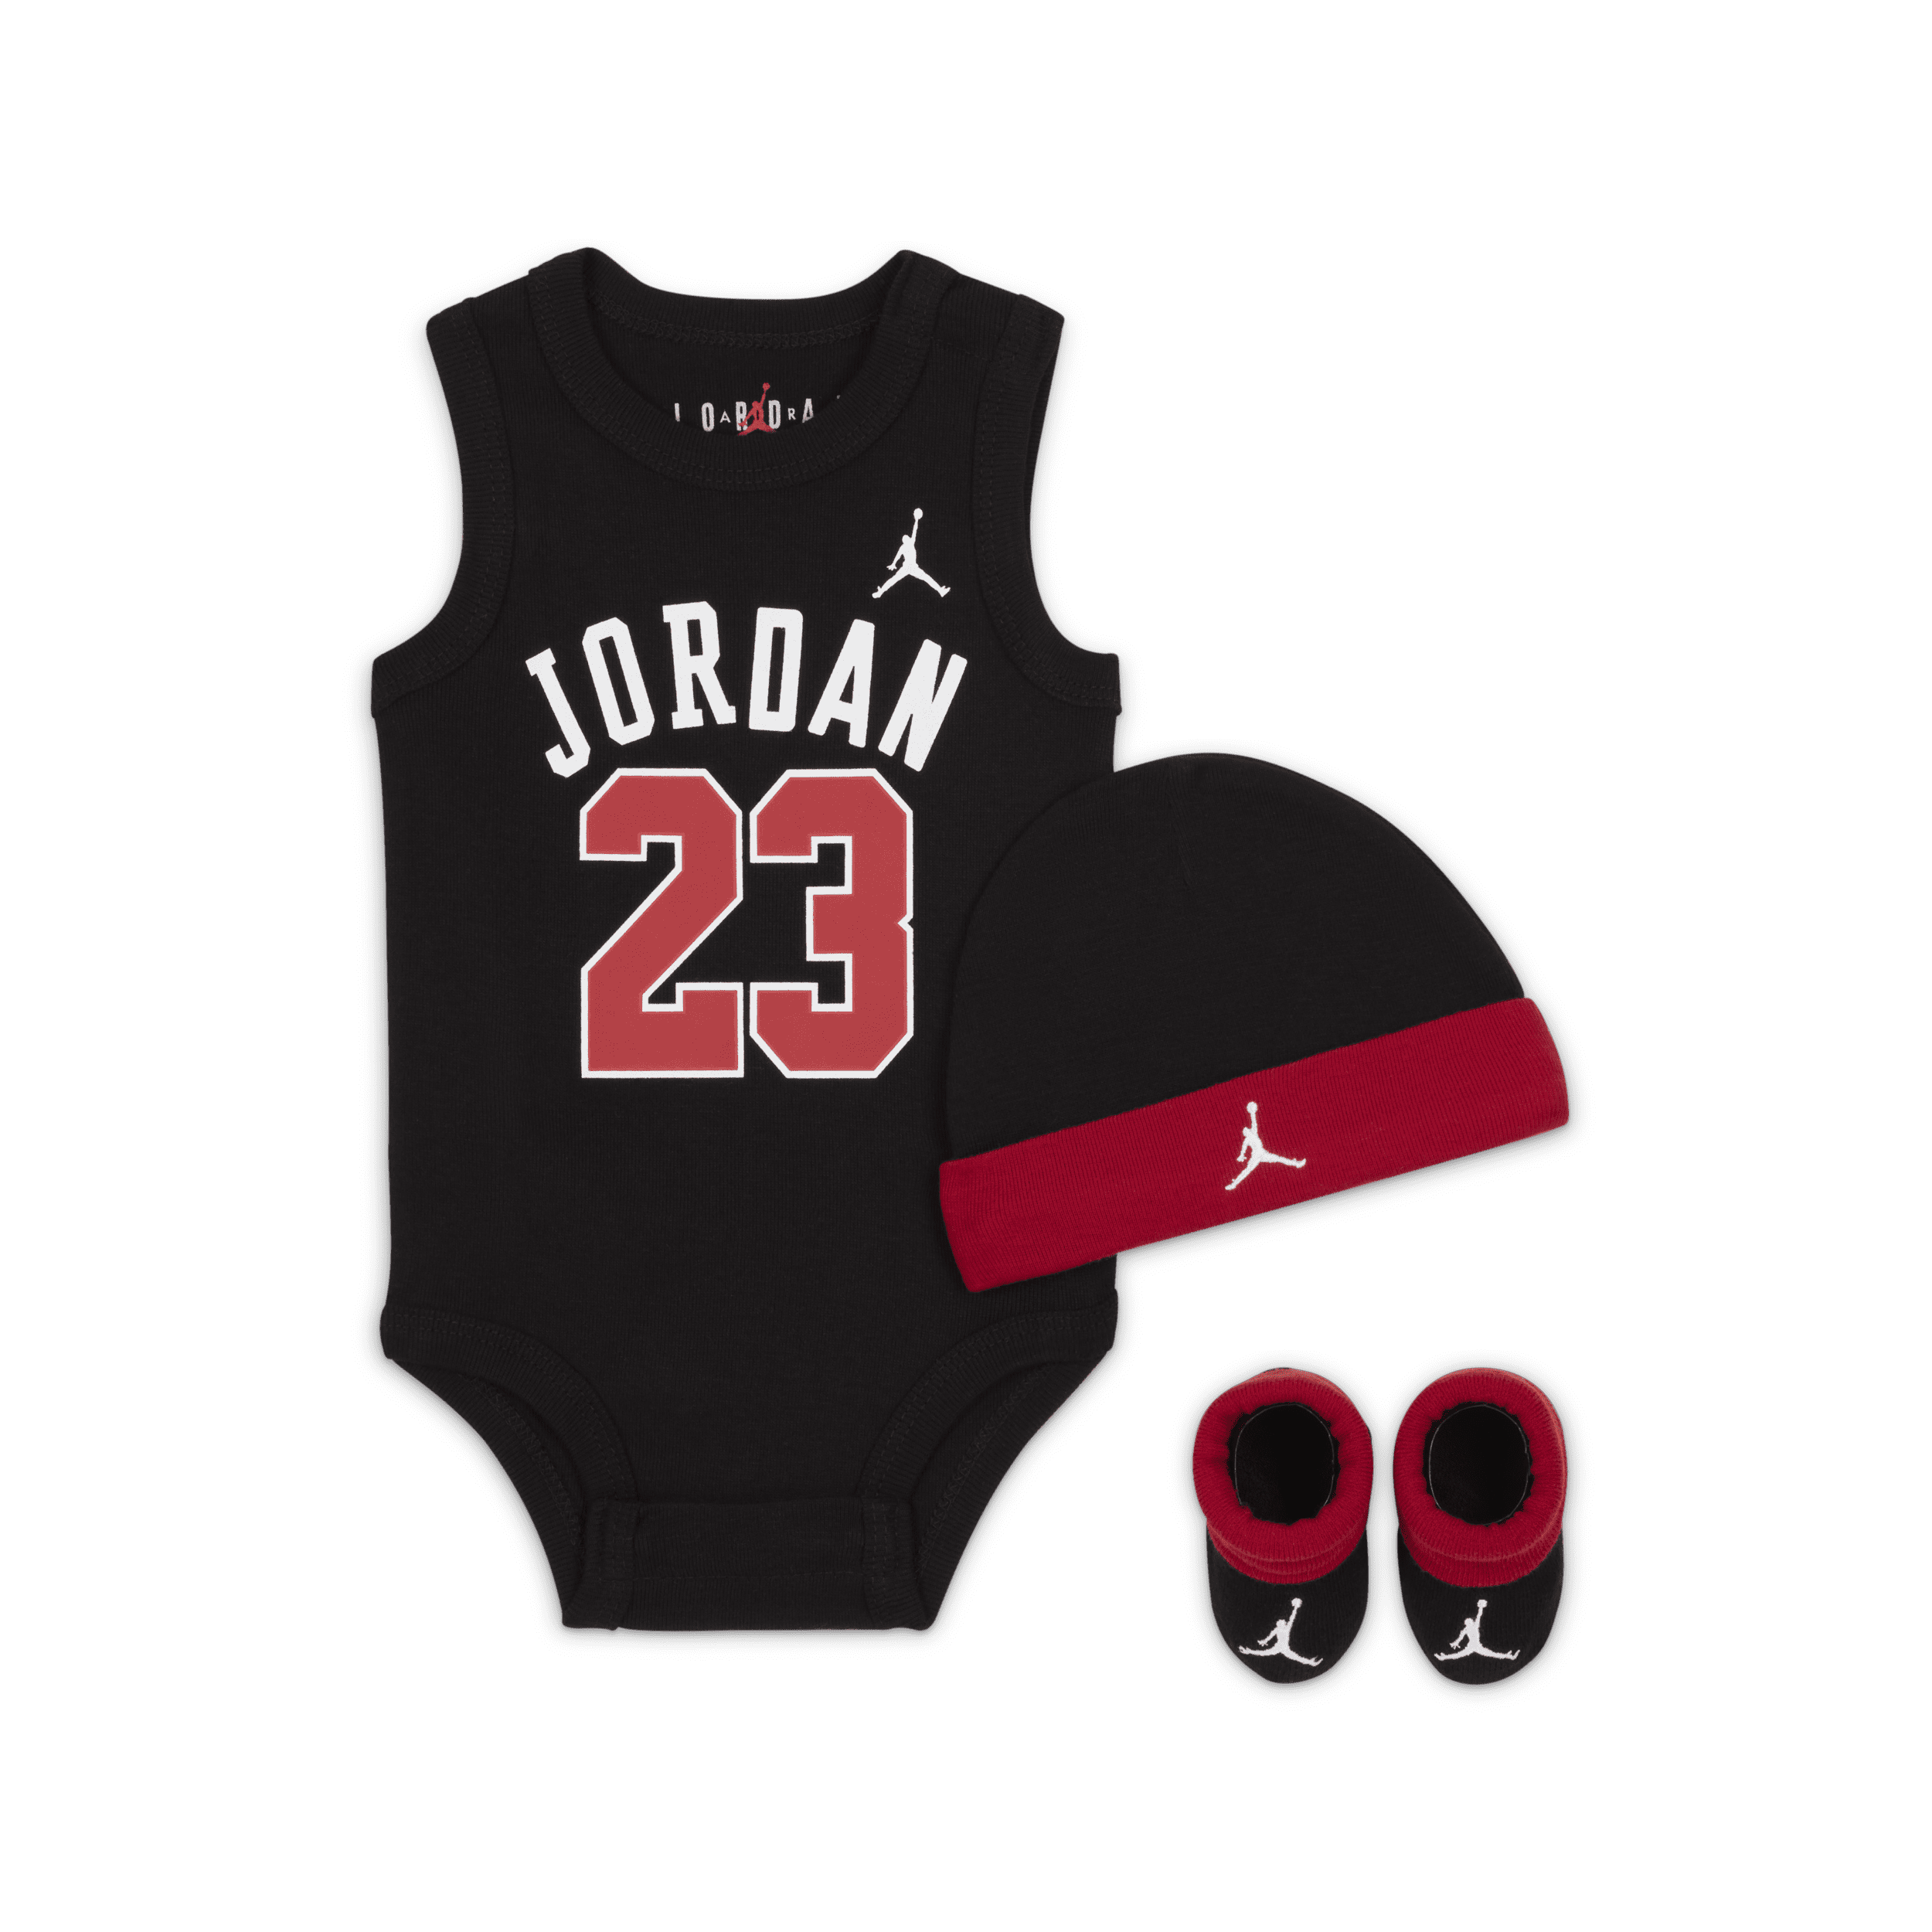 Jordan Jumpman-sæt med body, hue og booties til babyer - sort